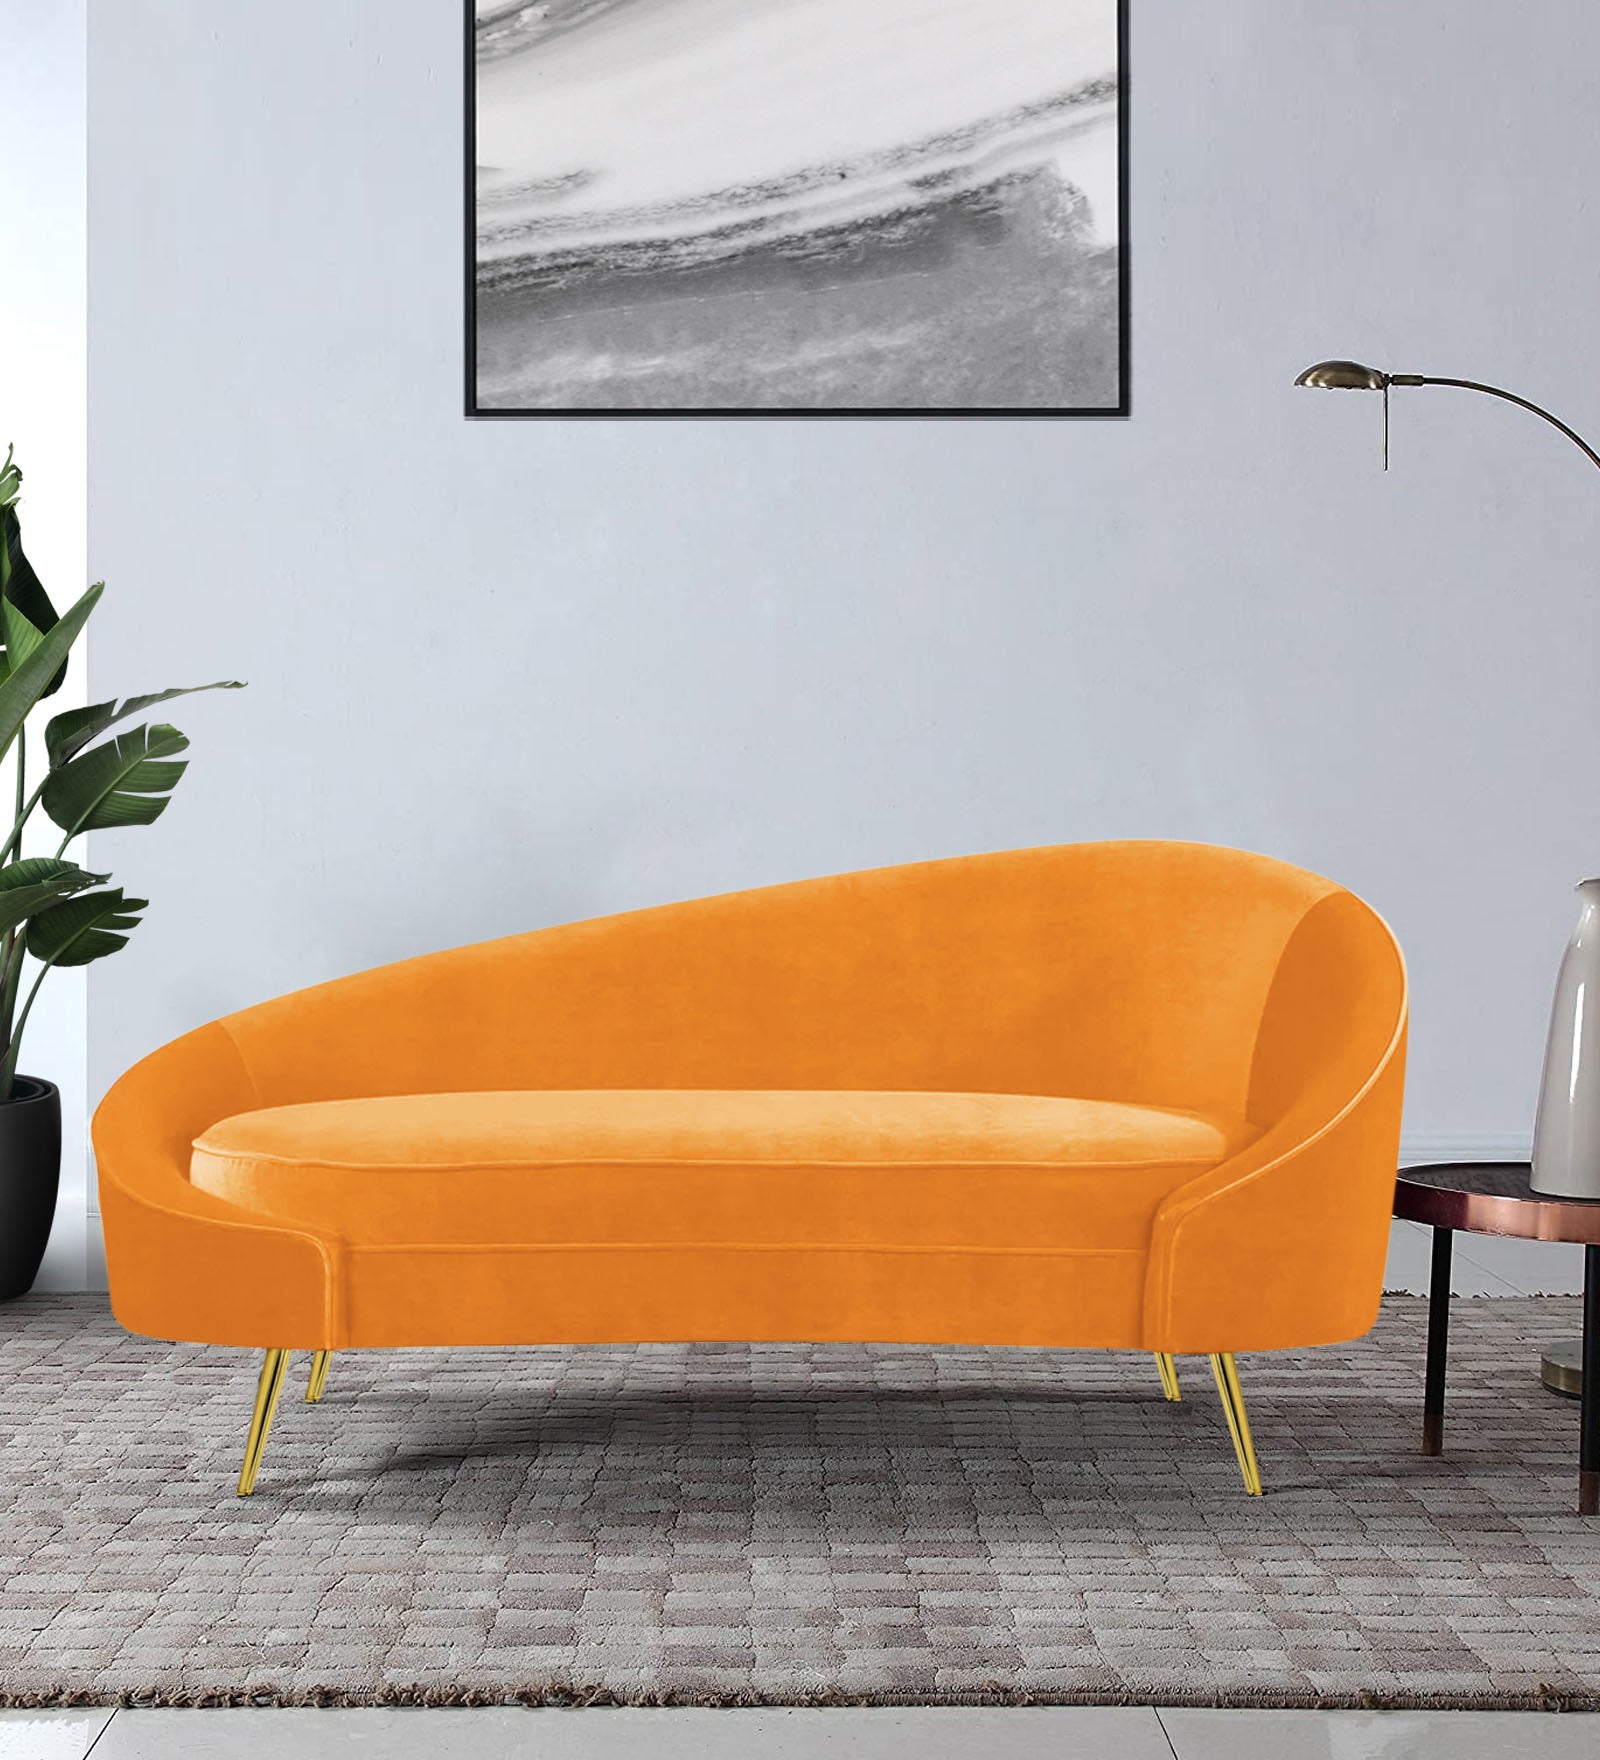 Cely Velvet LHS Chaise Lounger in Tangerine orange Colour